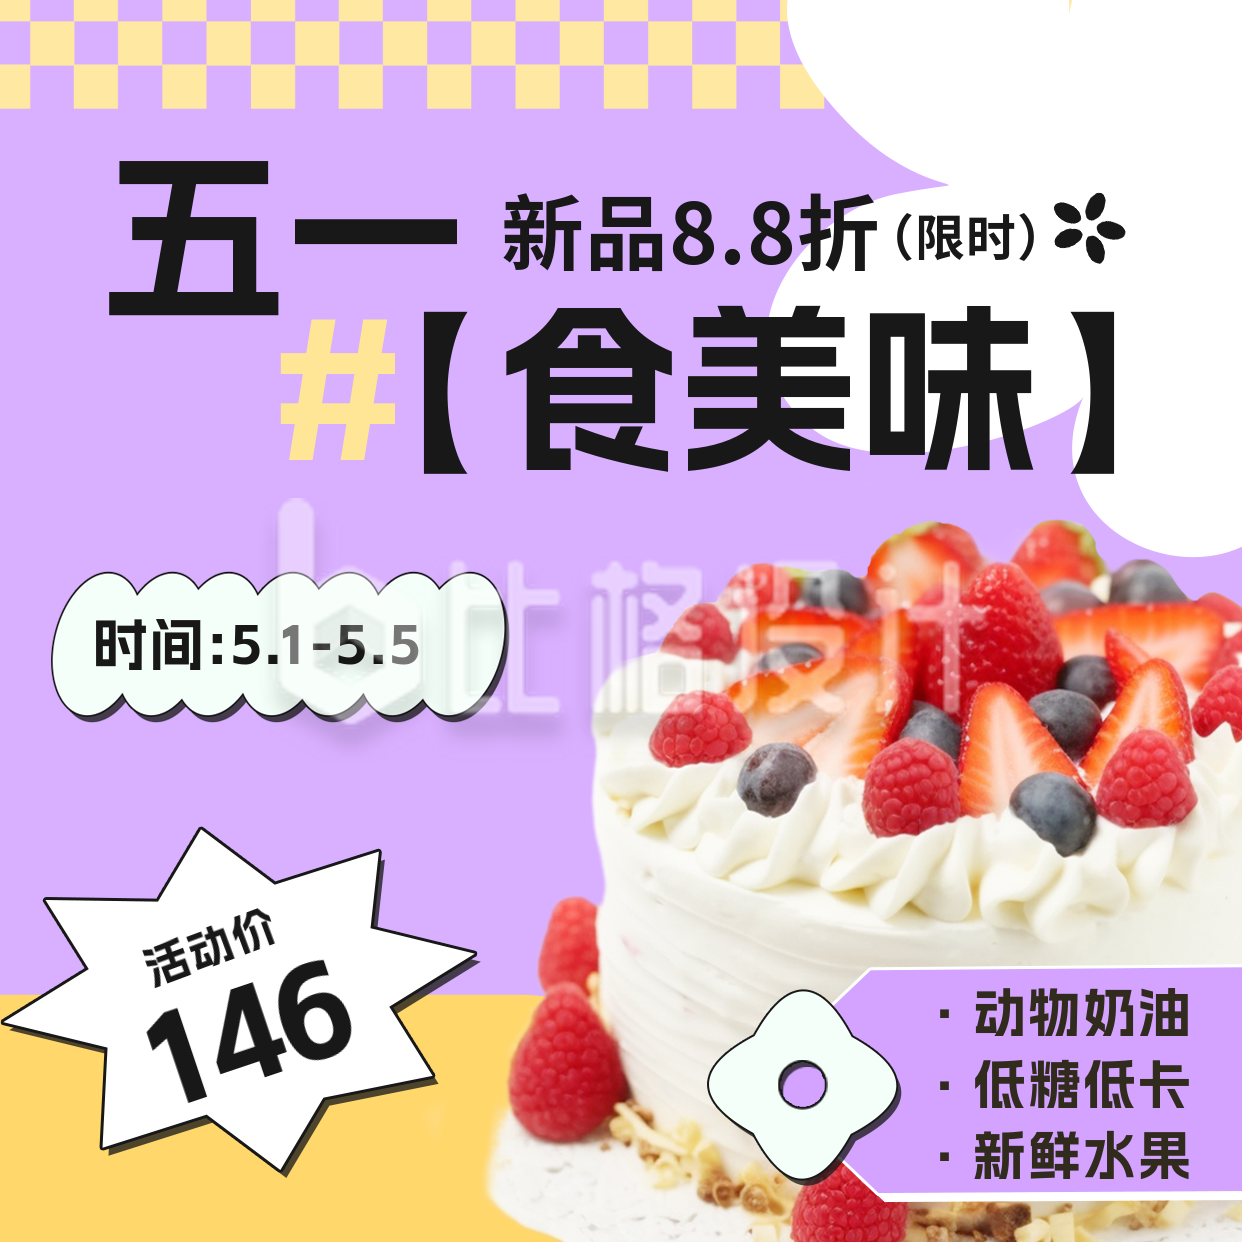 五一劳动节蛋糕甜品店活动宣传方形海报